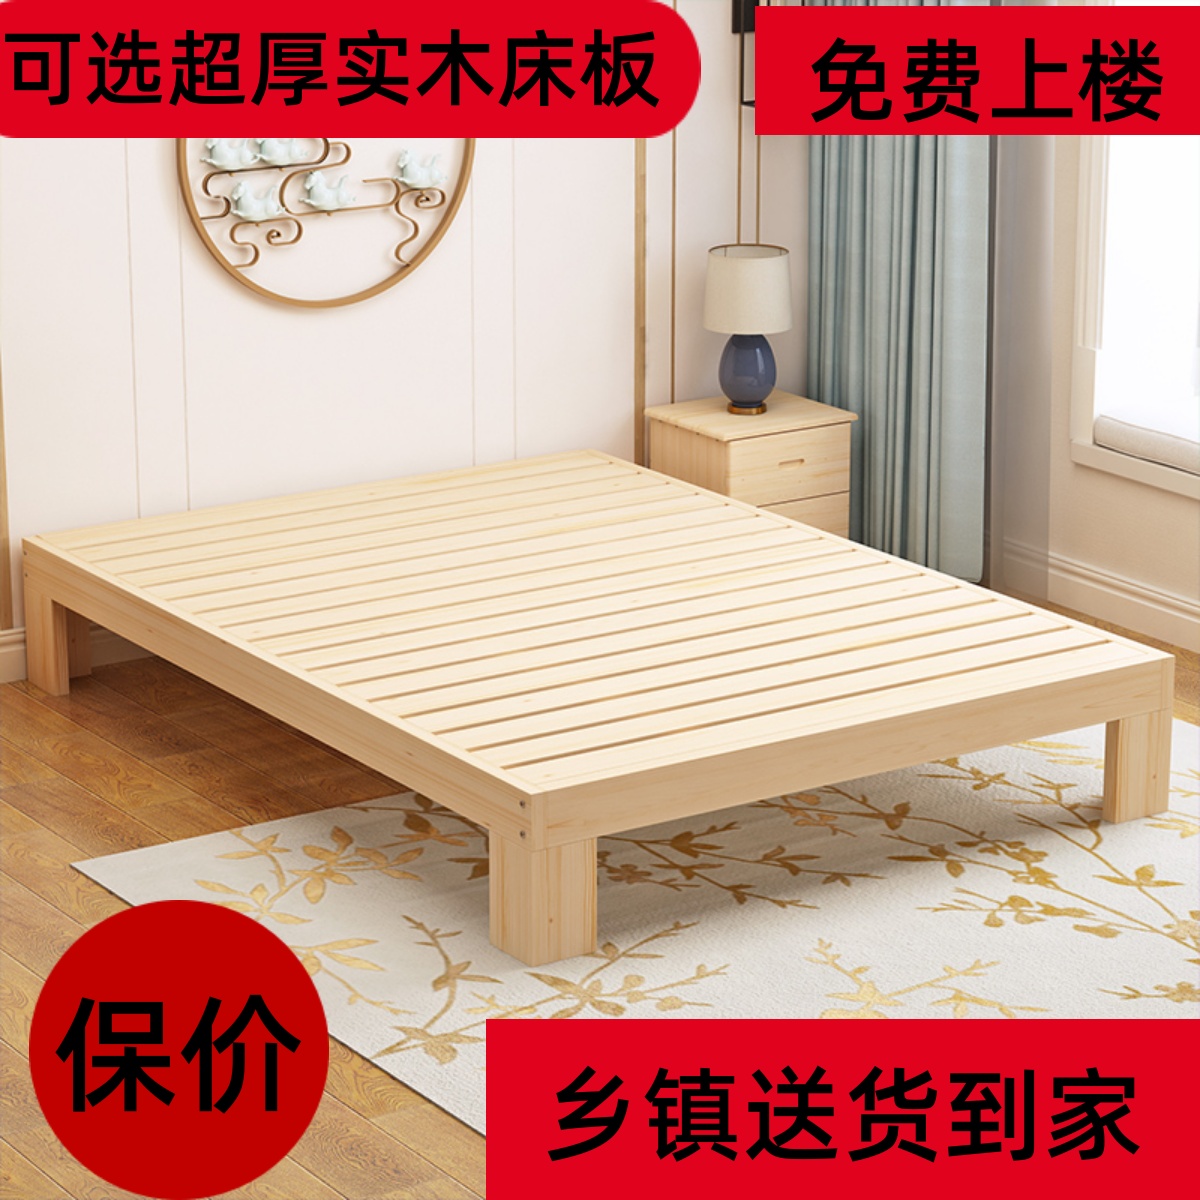 榻榻米实木床松木床单人床双人床儿童床成人床定制床便宜床出租床